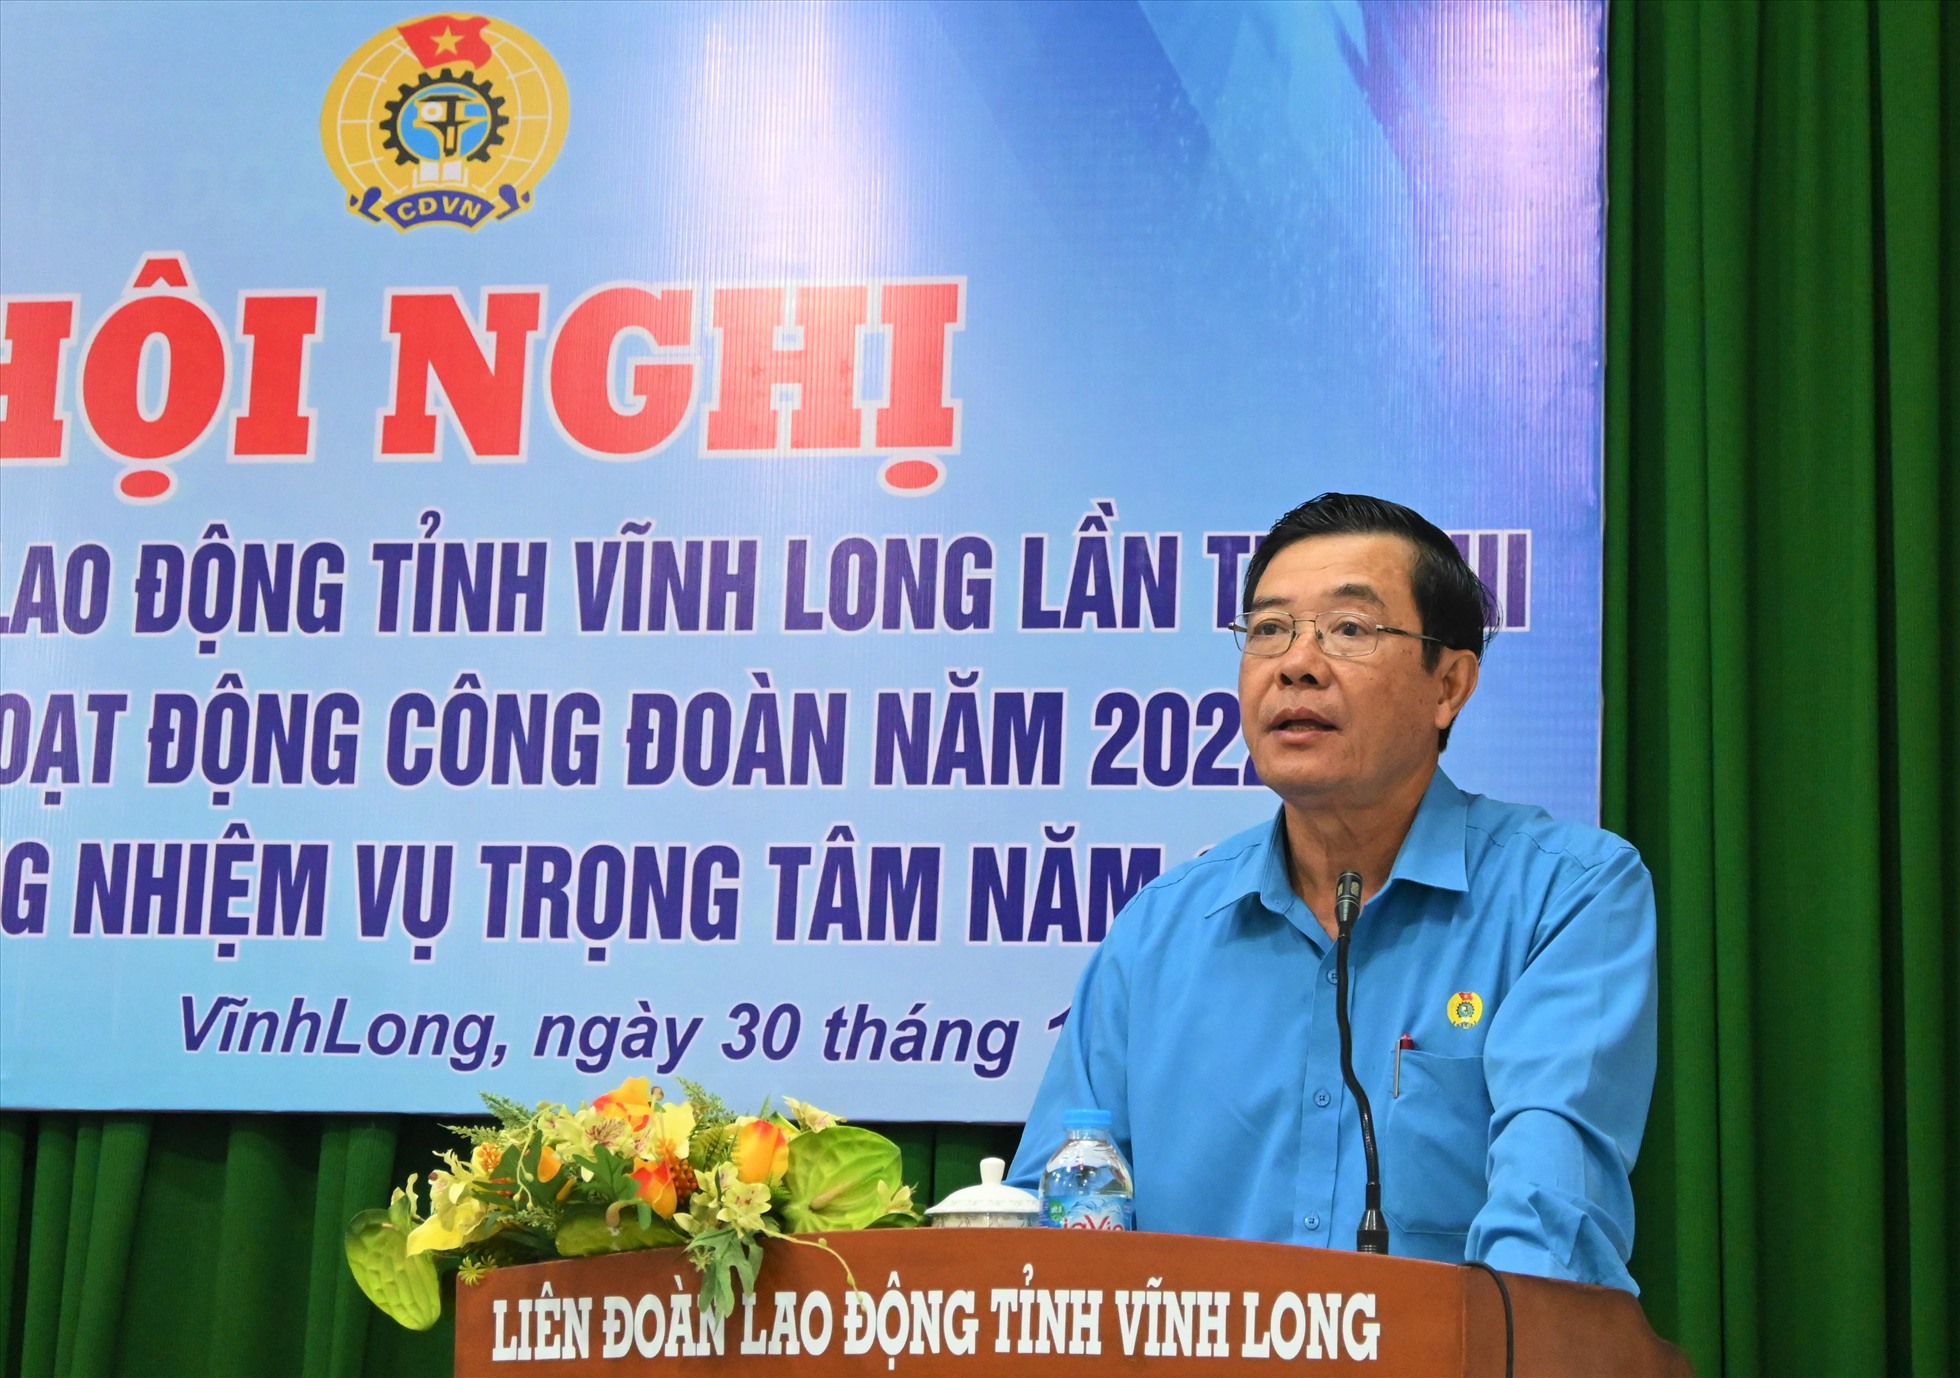 Chủ tịch LĐLĐ tỉnh Vĩnh Long Huỳnh Bá Long đề nghị các cấp công đoàn tỉnh Vĩnh Long nỗ lực đem cái tết đến tất cả người lao động. Ảnh: Thành Nhân